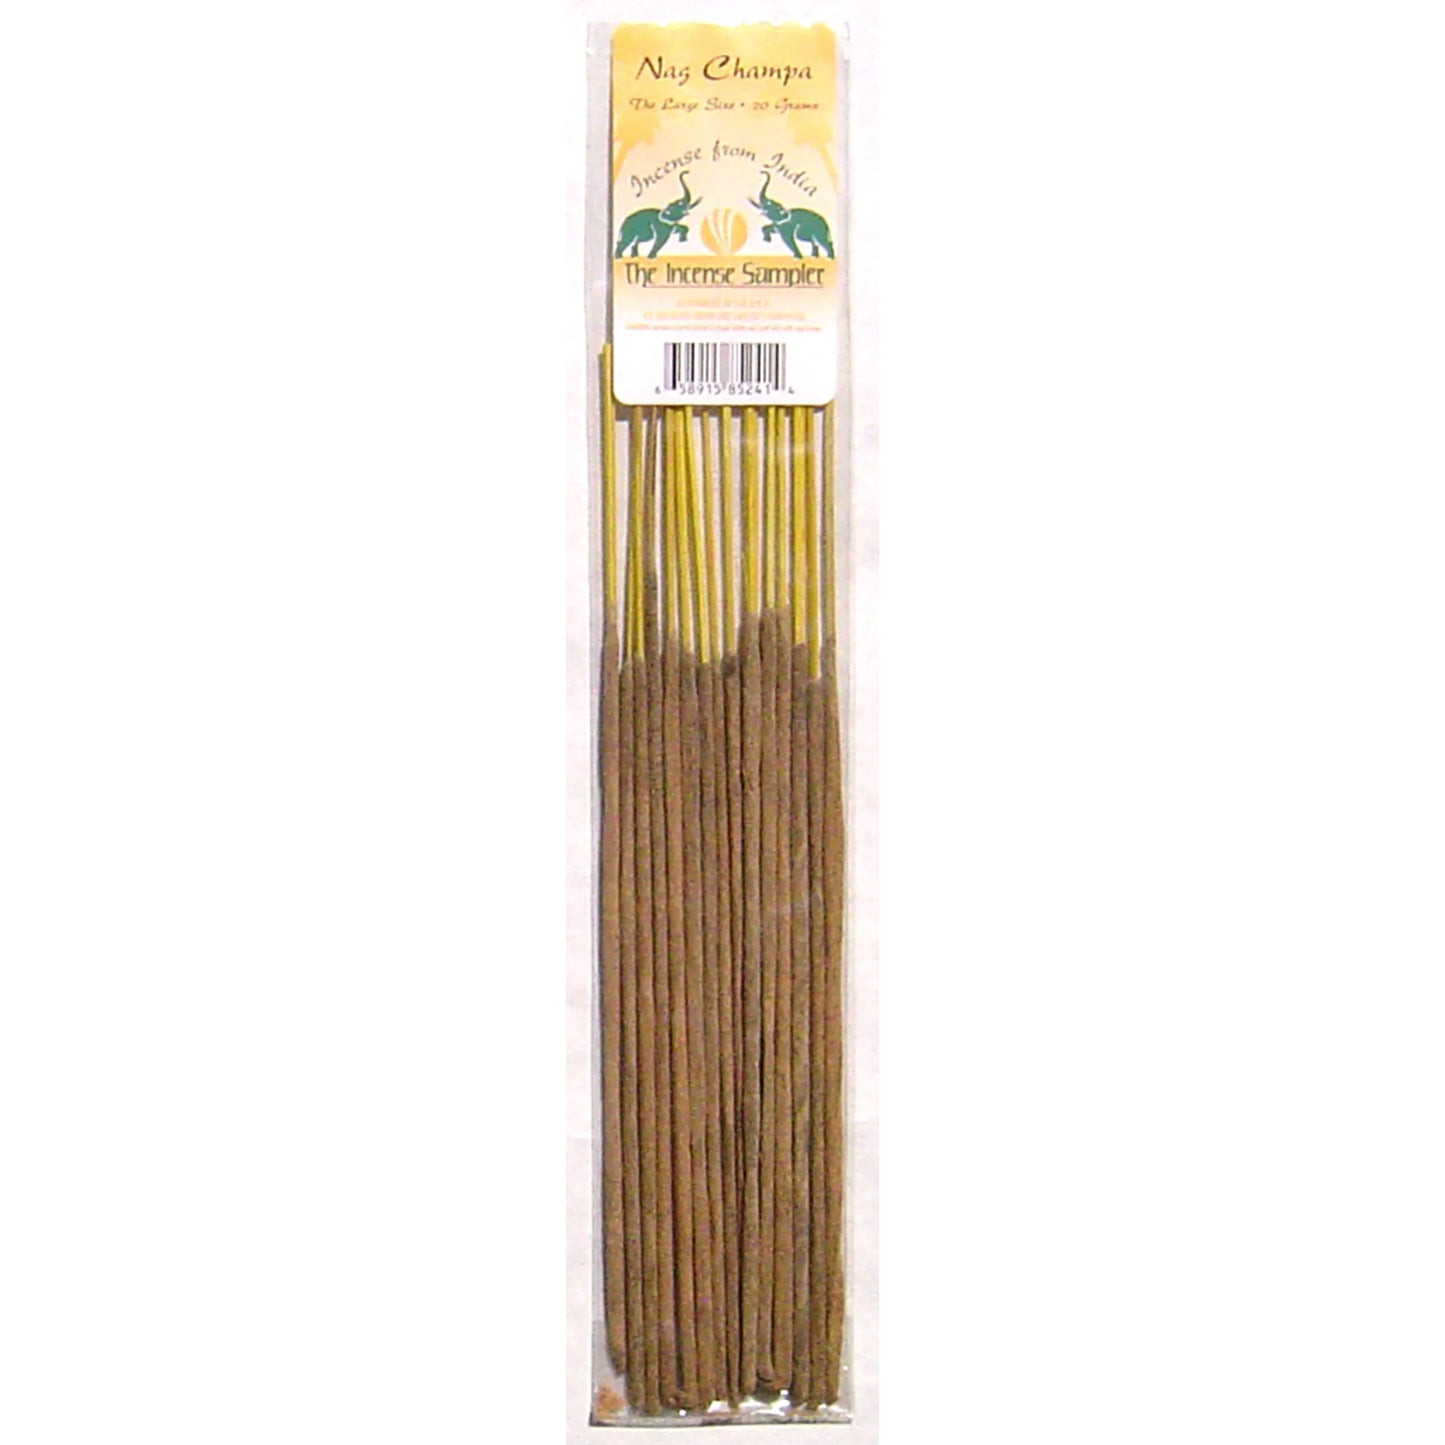 Incense From India - Nag Champa